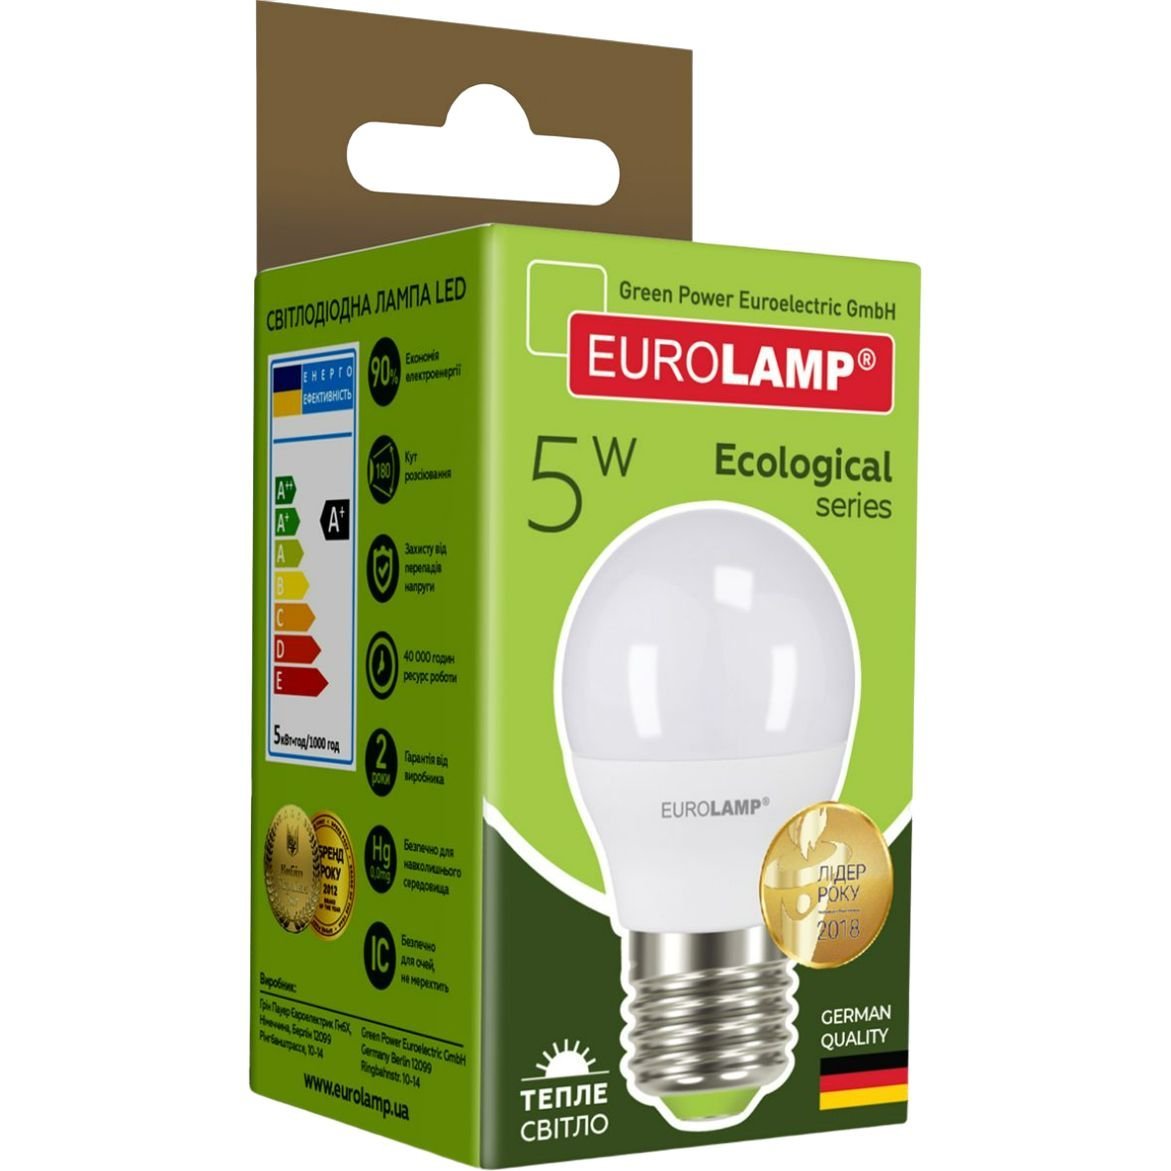 Светодиодная лампа Eurolamp LED Ecological Series, G45, 5W, E27, 3000K (LED-G45-05273(P)) - фото 4